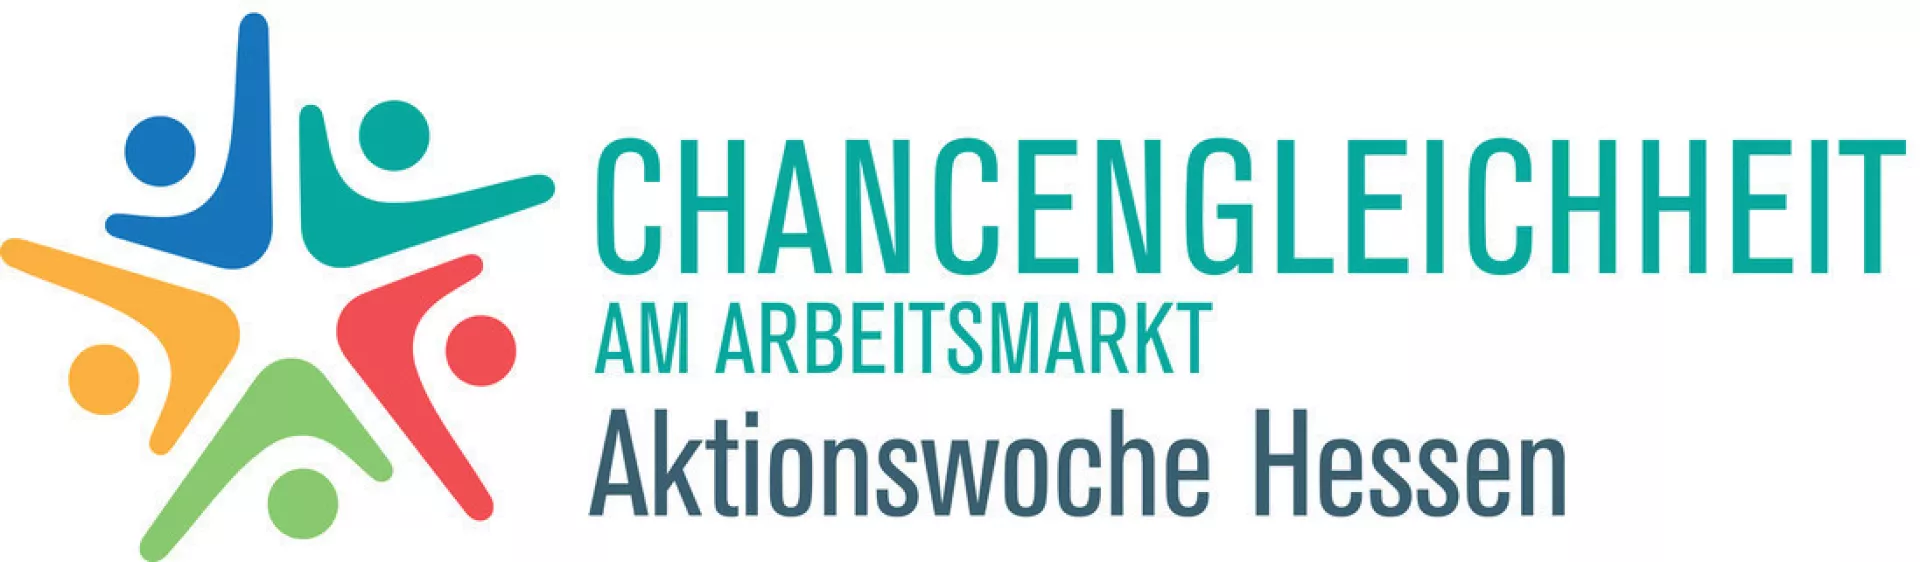 Logo der hessischen Aktionswoche zur Chancengleichheit am Arbeitsmarkt